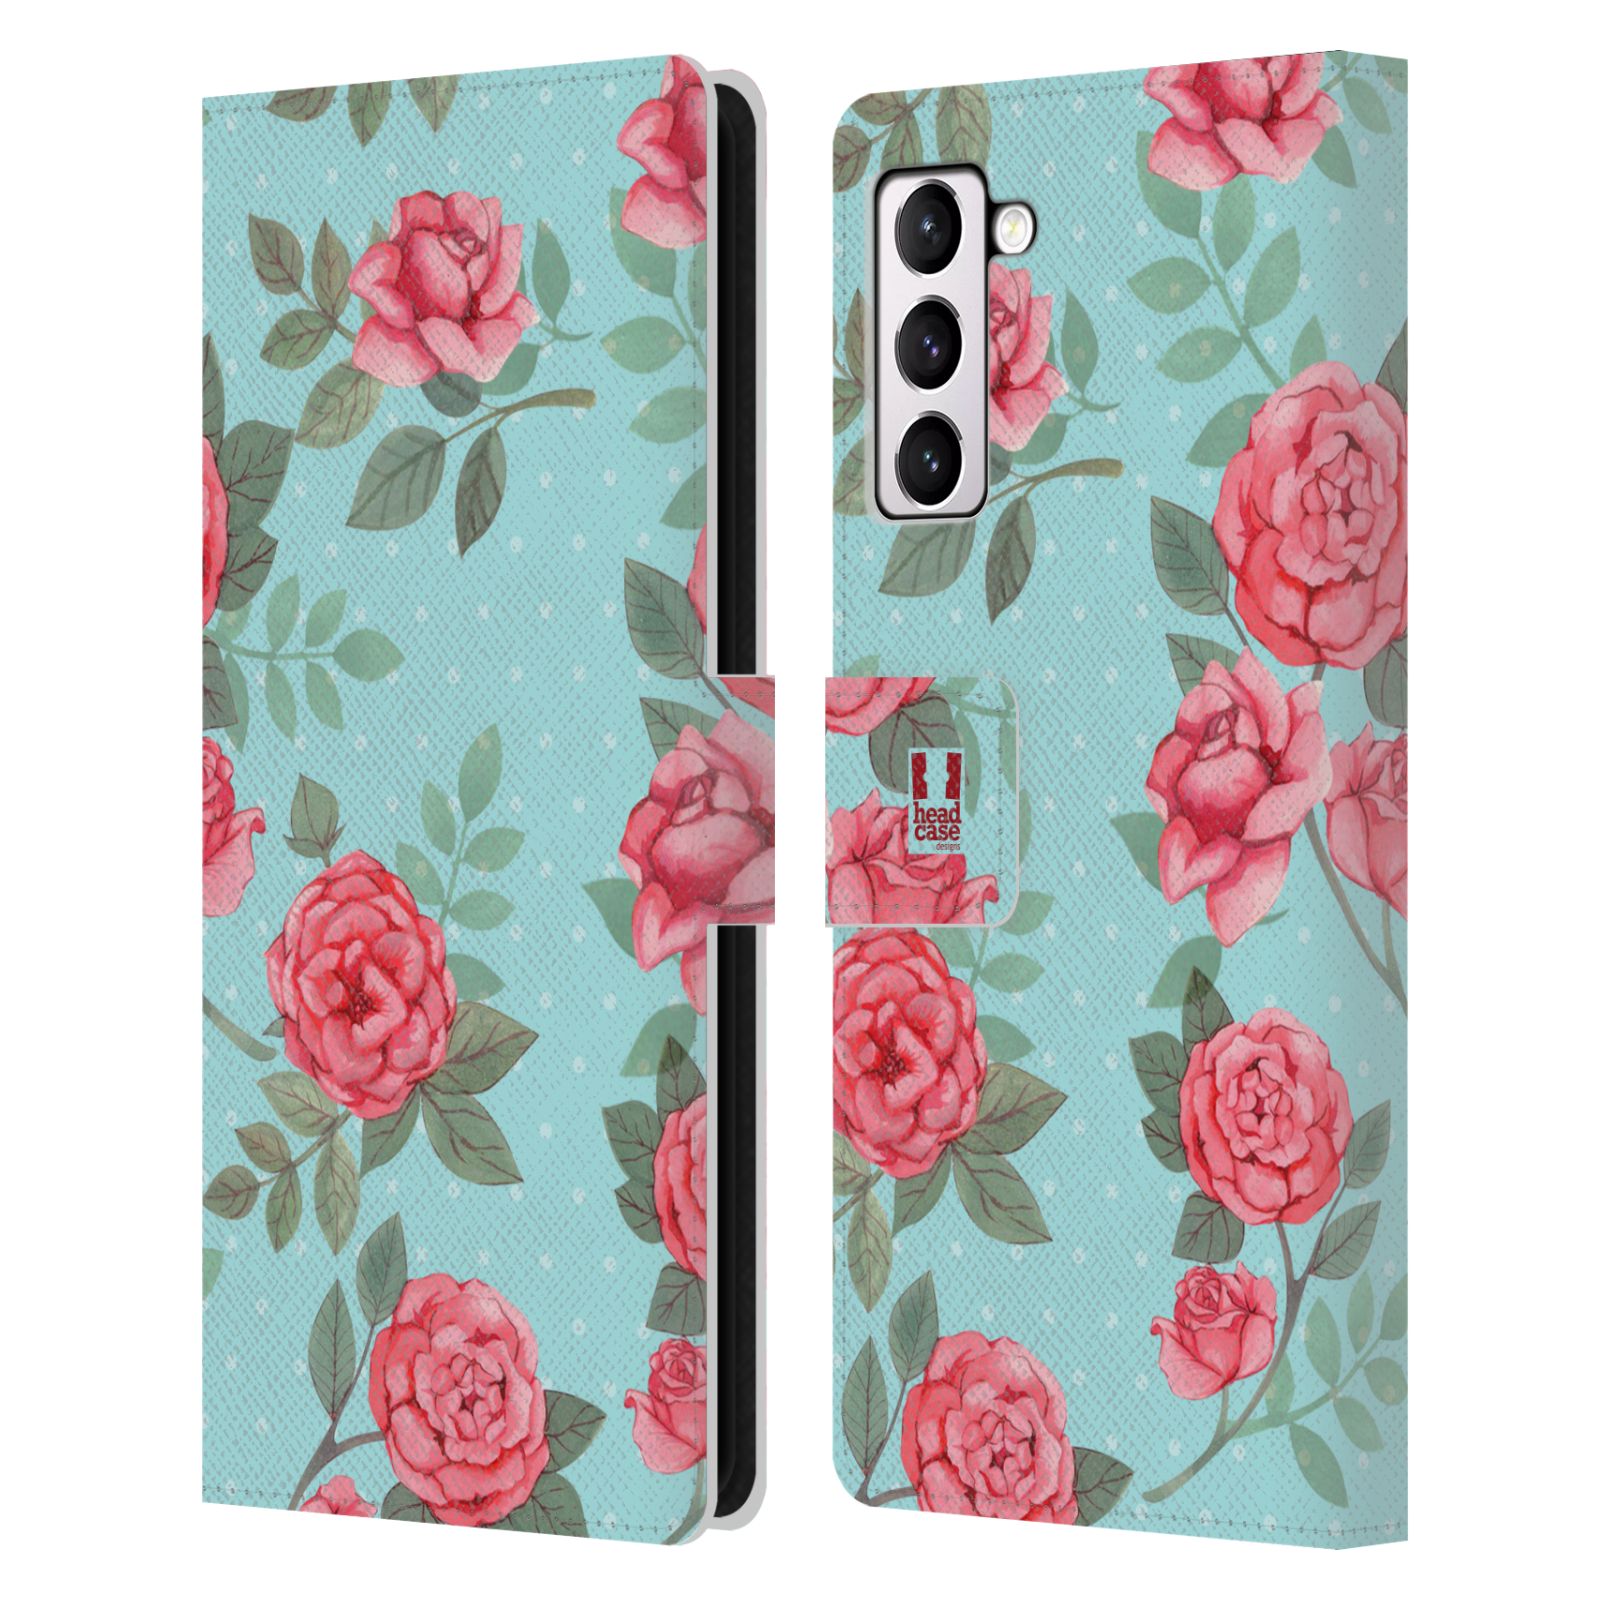 Pouzdro HEAD CASE na mobil Samsung Galaxy S21+ 5G / S21 PLUS 5G romantické květy velké růže modrá a růžová